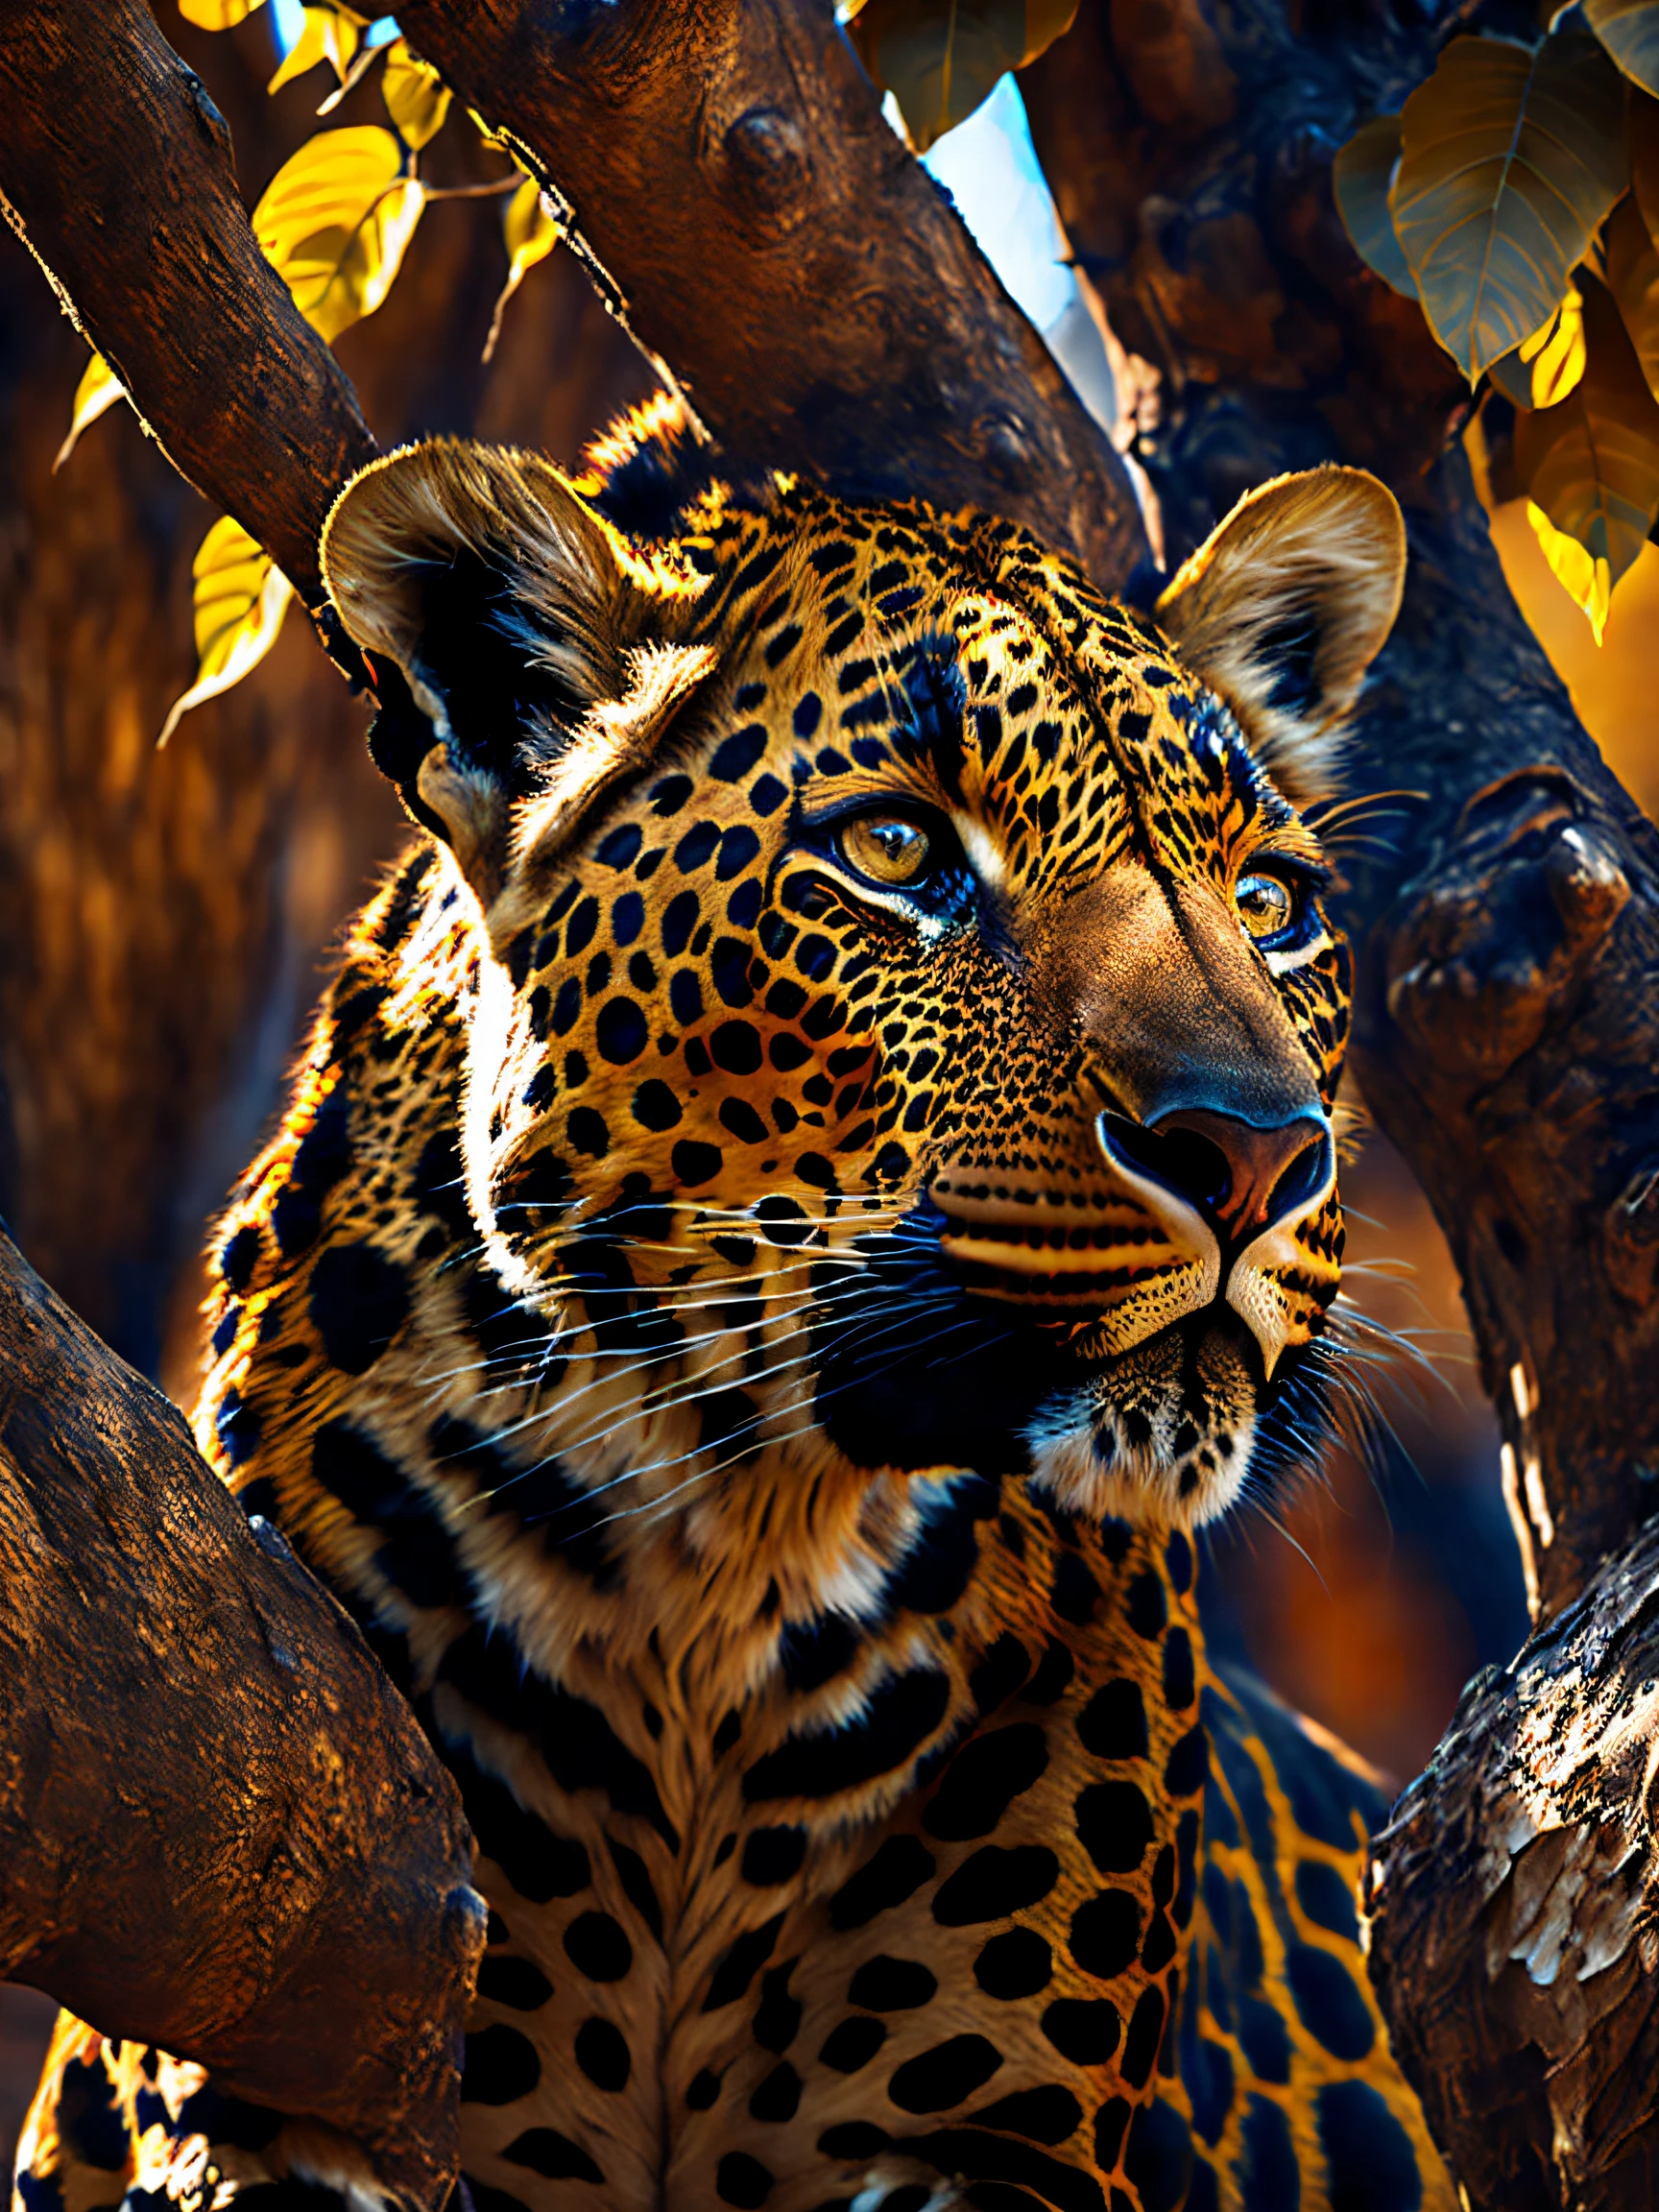 Um leopardo dormindo nos galhos de uma árvore na savana, clima quente e ensolarado, realista, detalhado, 8K, estilo to8contrast, fotografia discreta, fotografia, reflexo de lente, documentário sobre vida selvagem, cores vivas, Câmera sem espelho Sony a6600, embelezar2